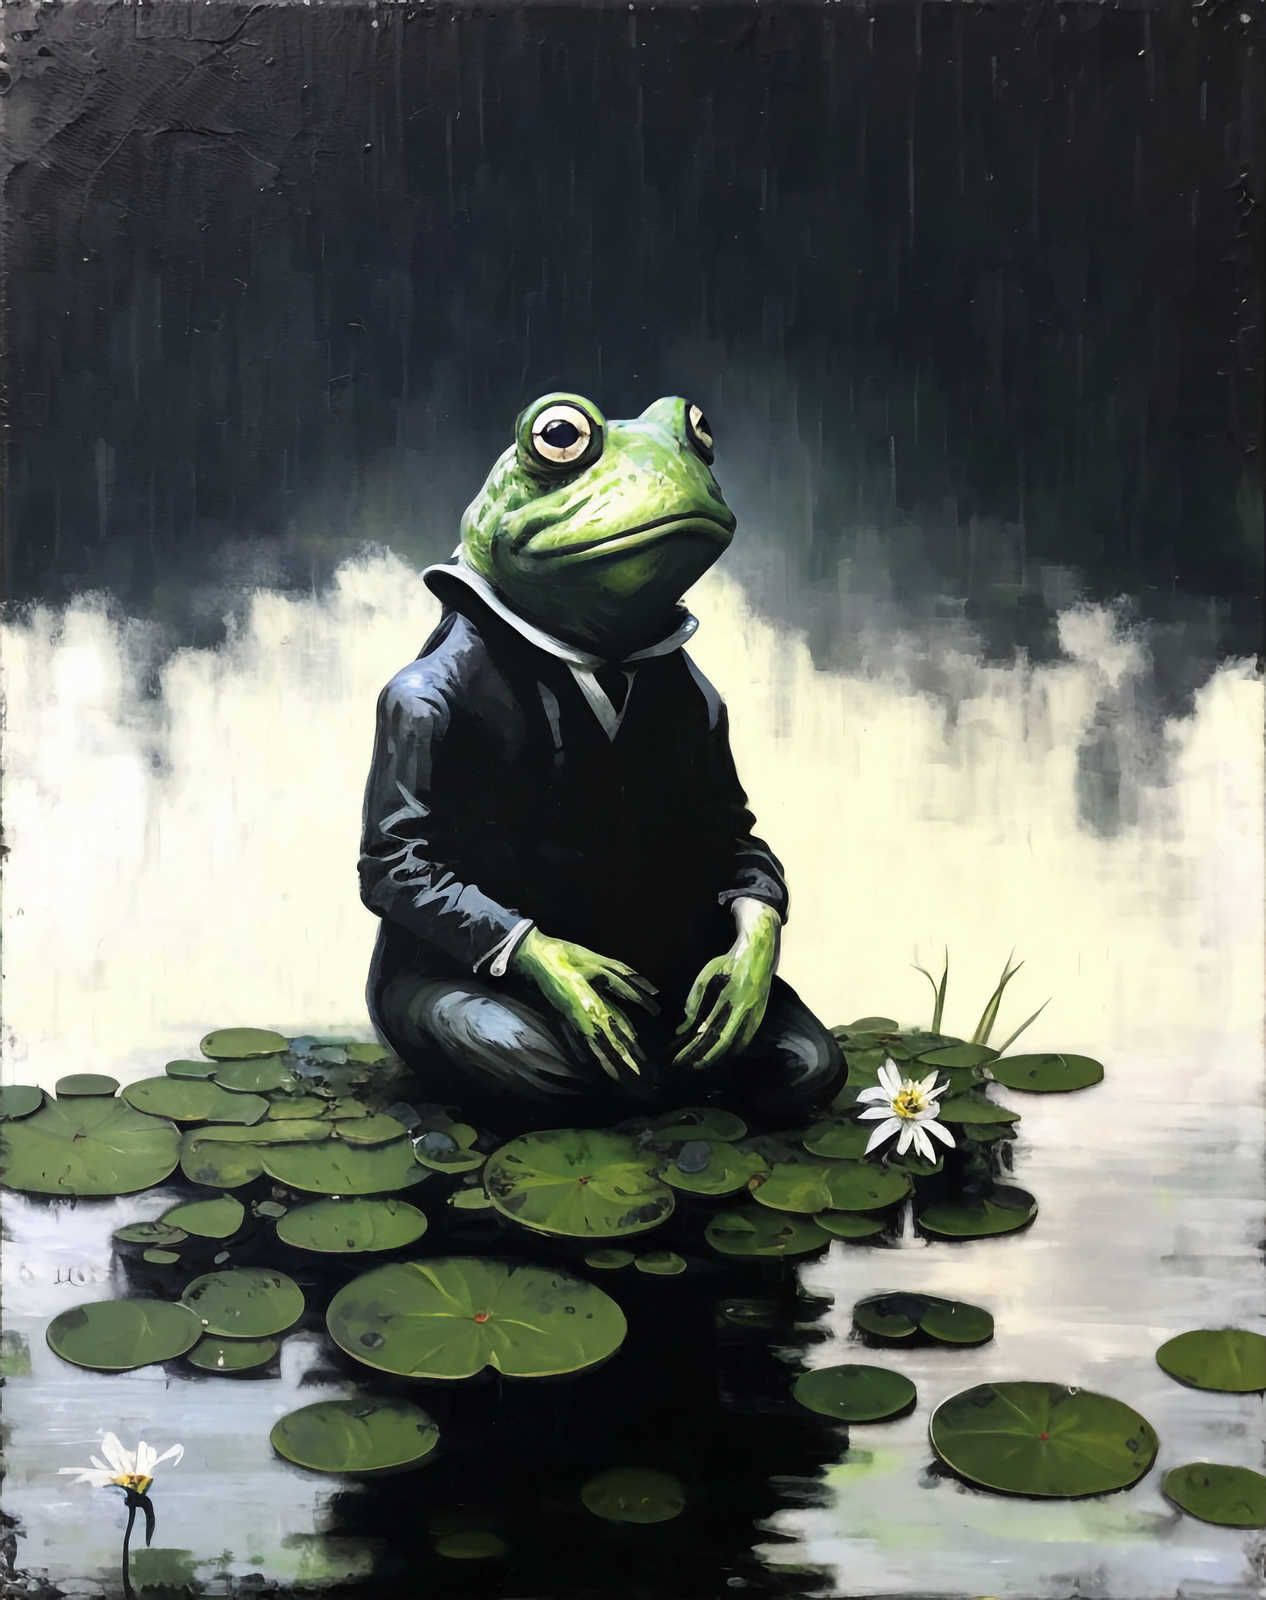             KI-Leinwandbild »chilling frog« – 80 cm x 120 cm
        